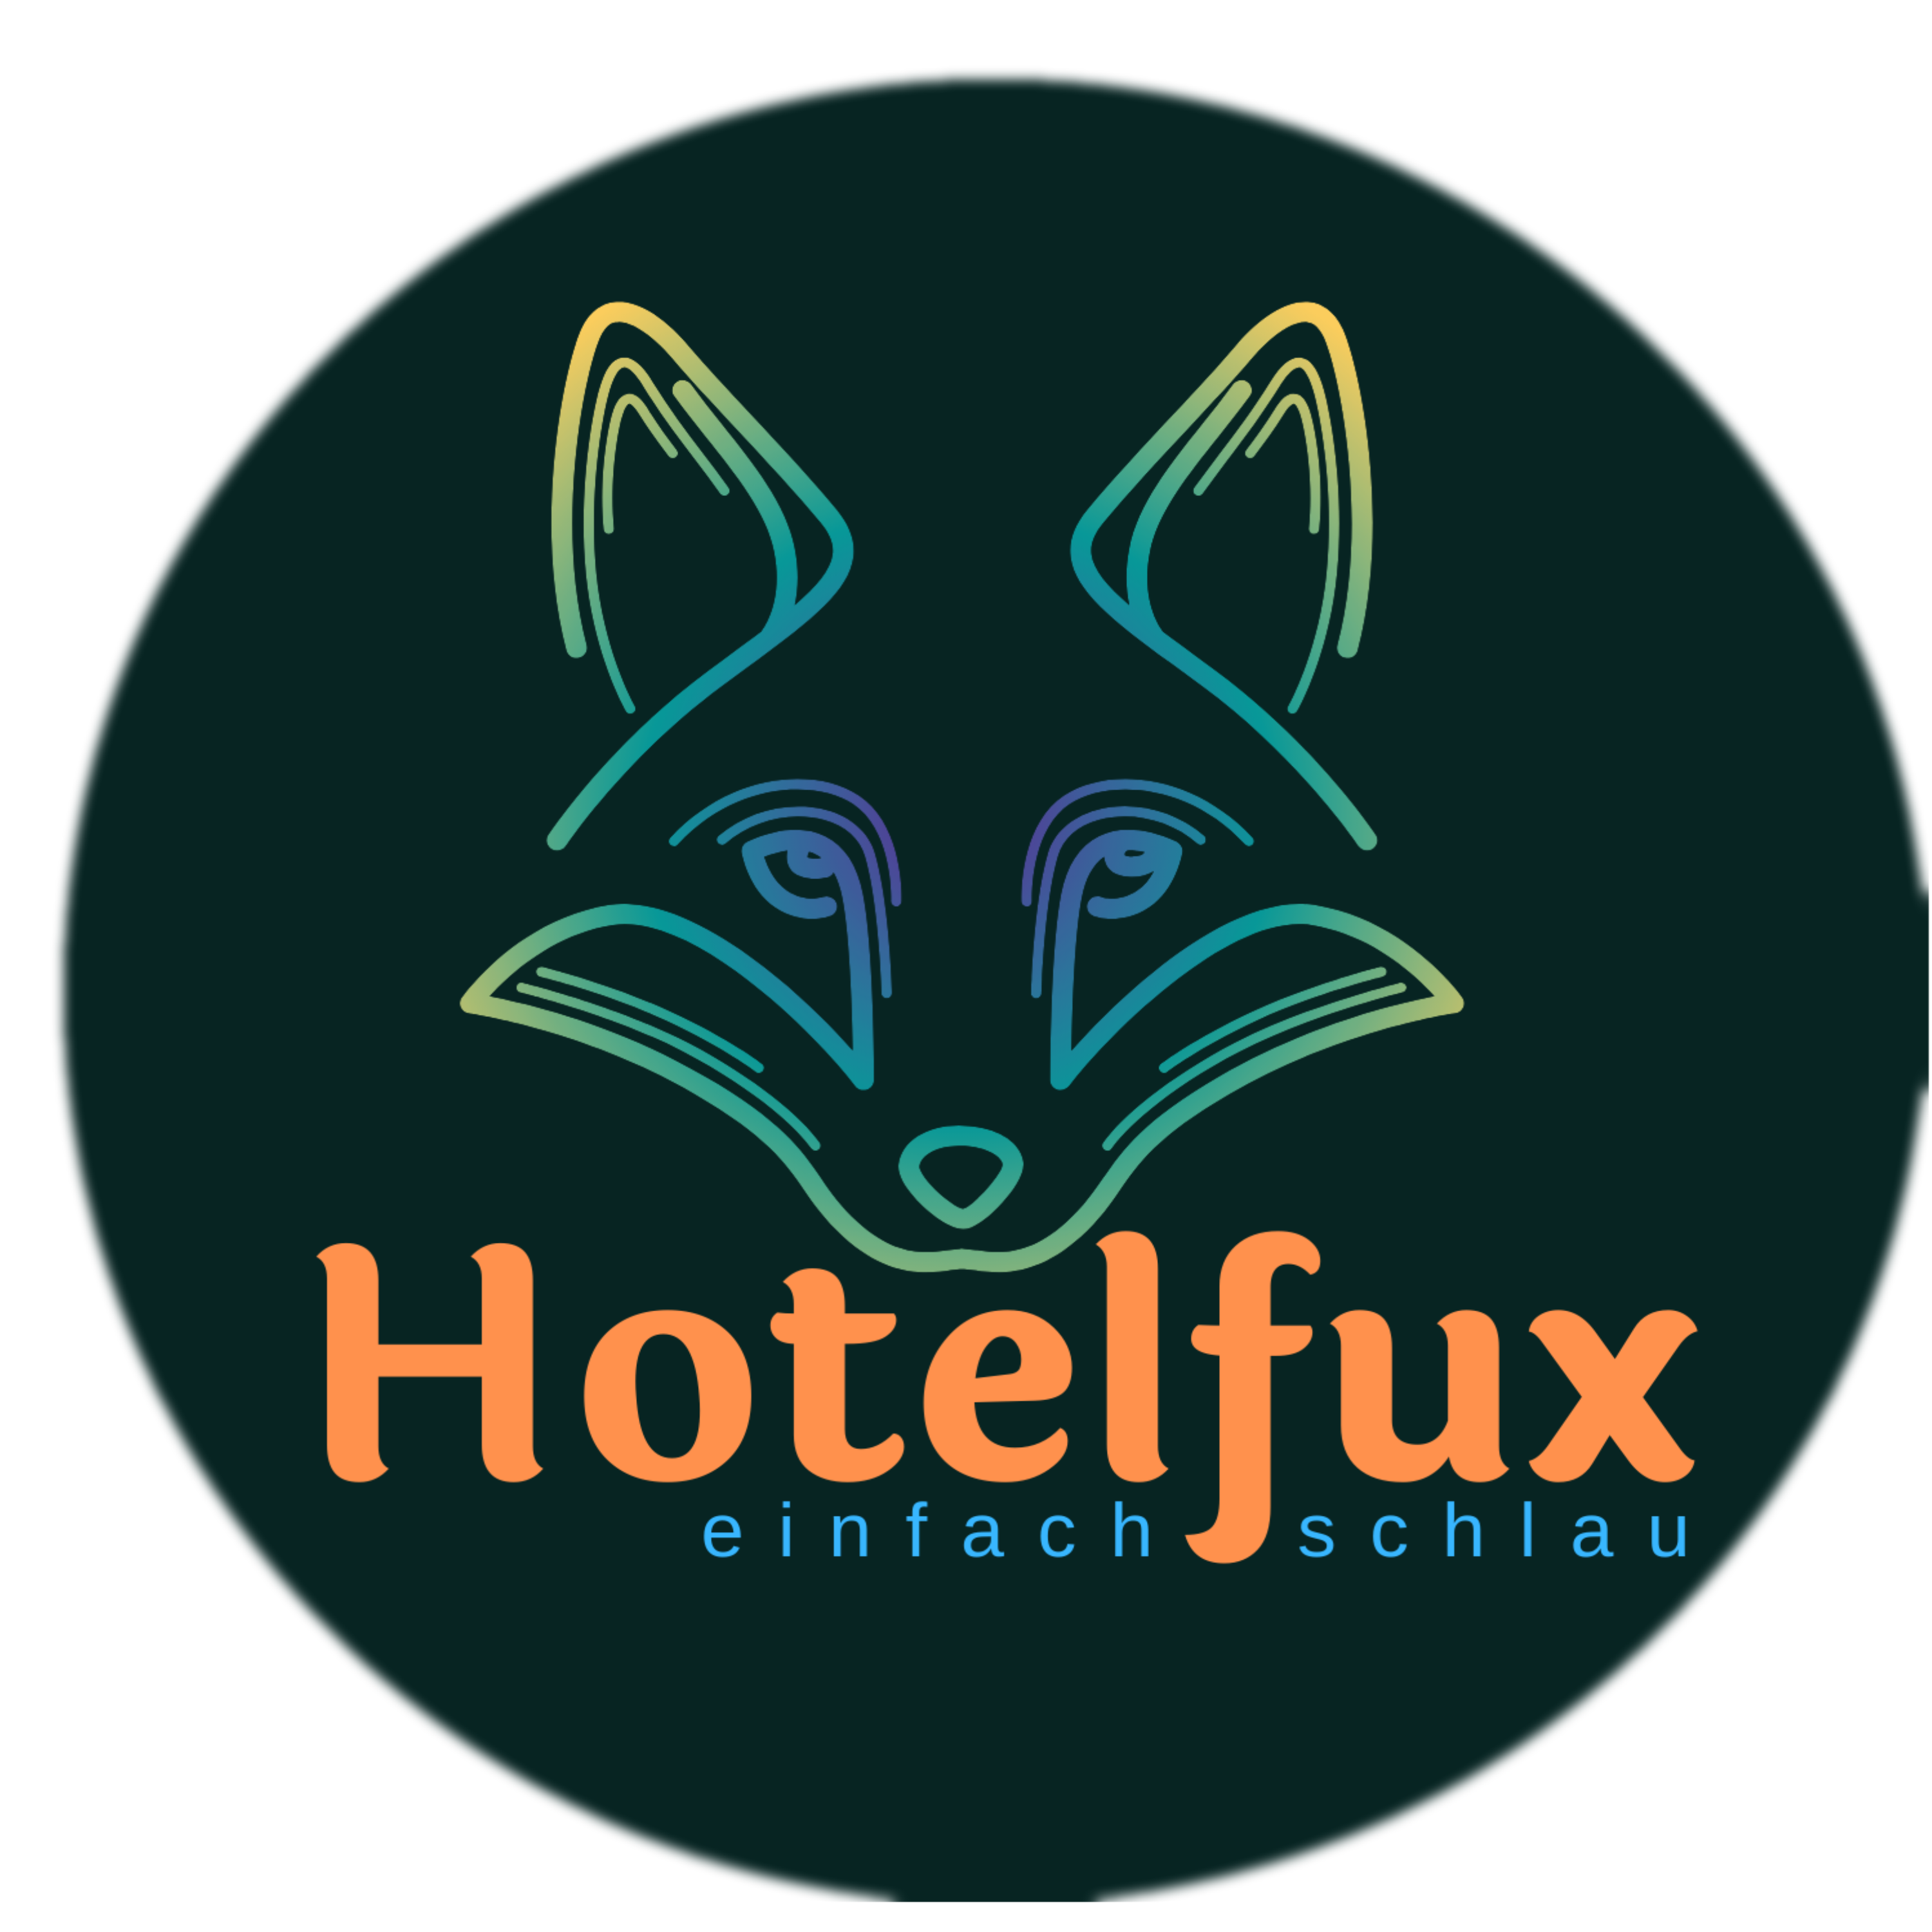 (c) Hotelfux.de